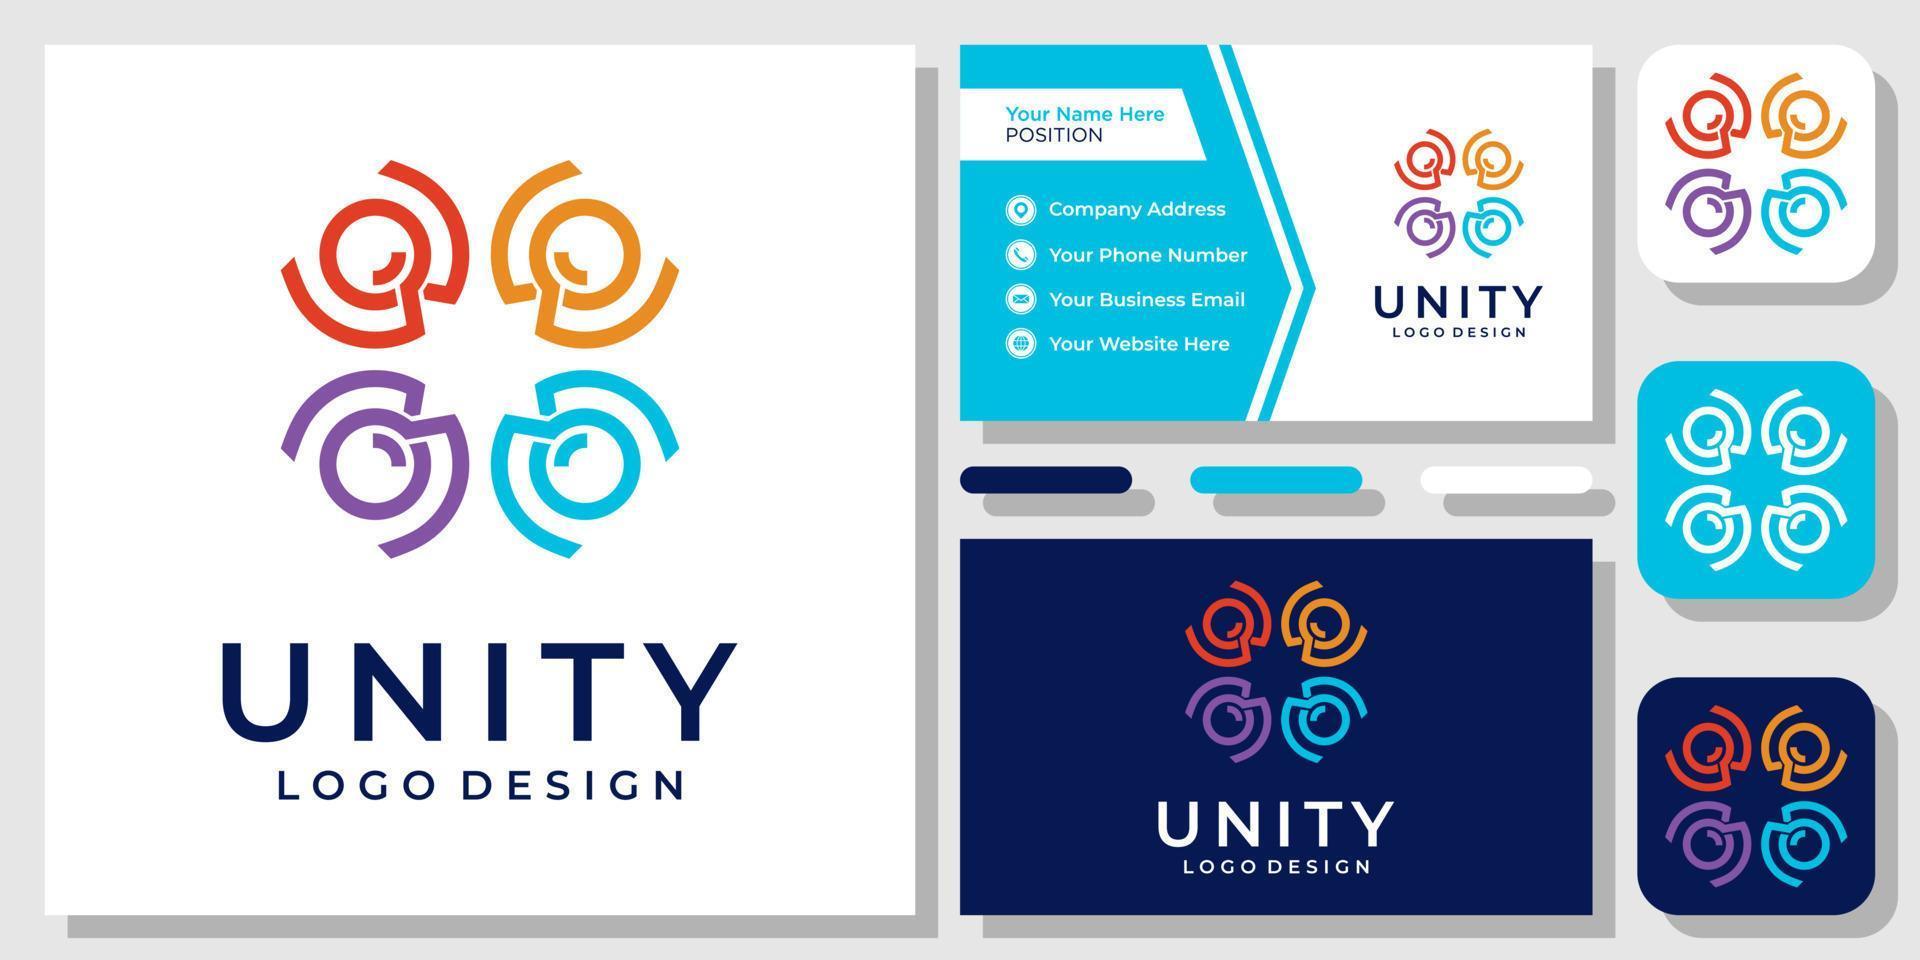 gemeenschap gelukkige mensen eenheid circulaire groep sociale familie logo-ontwerp met sjabloon voor visitekaartjes vector